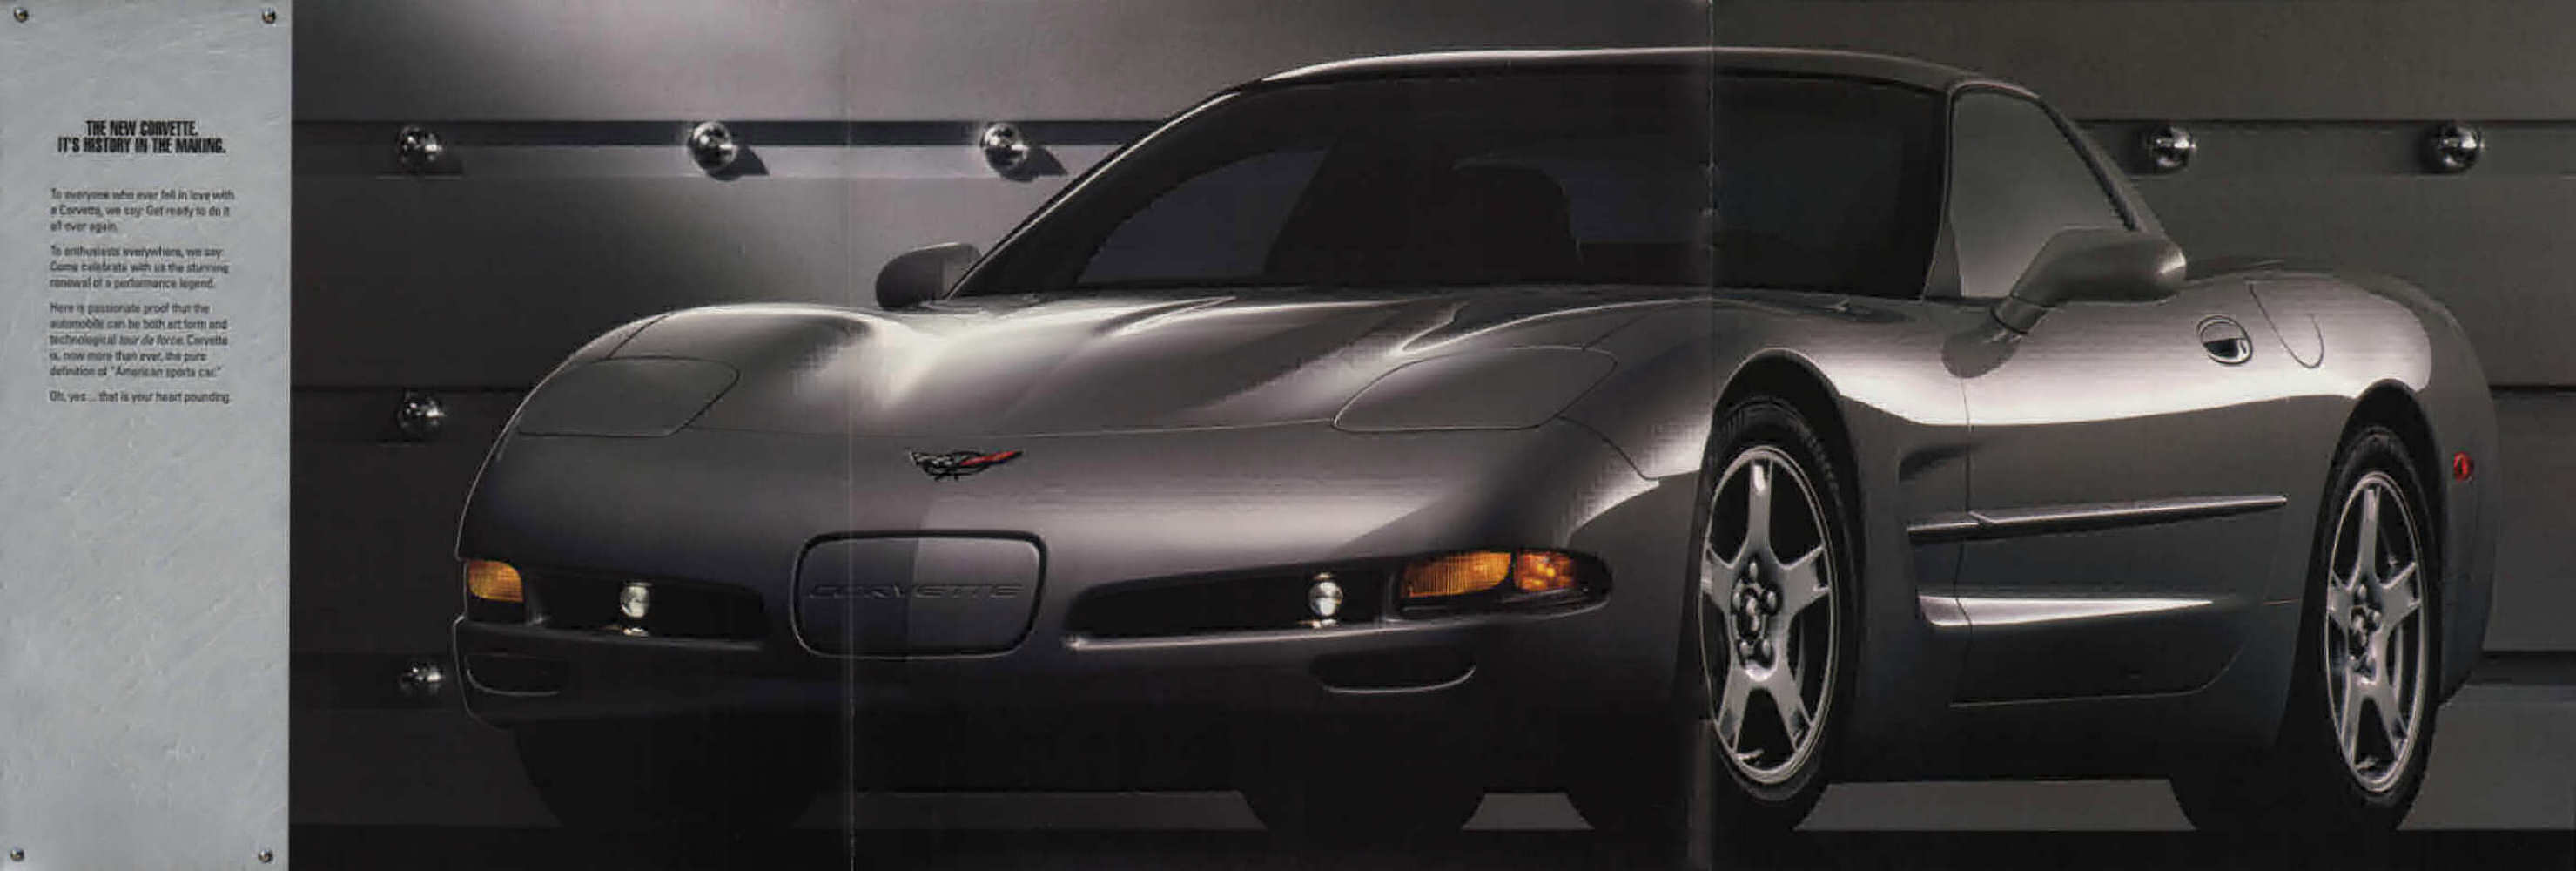 1997_Chevrolet_Corvette-05-06-07